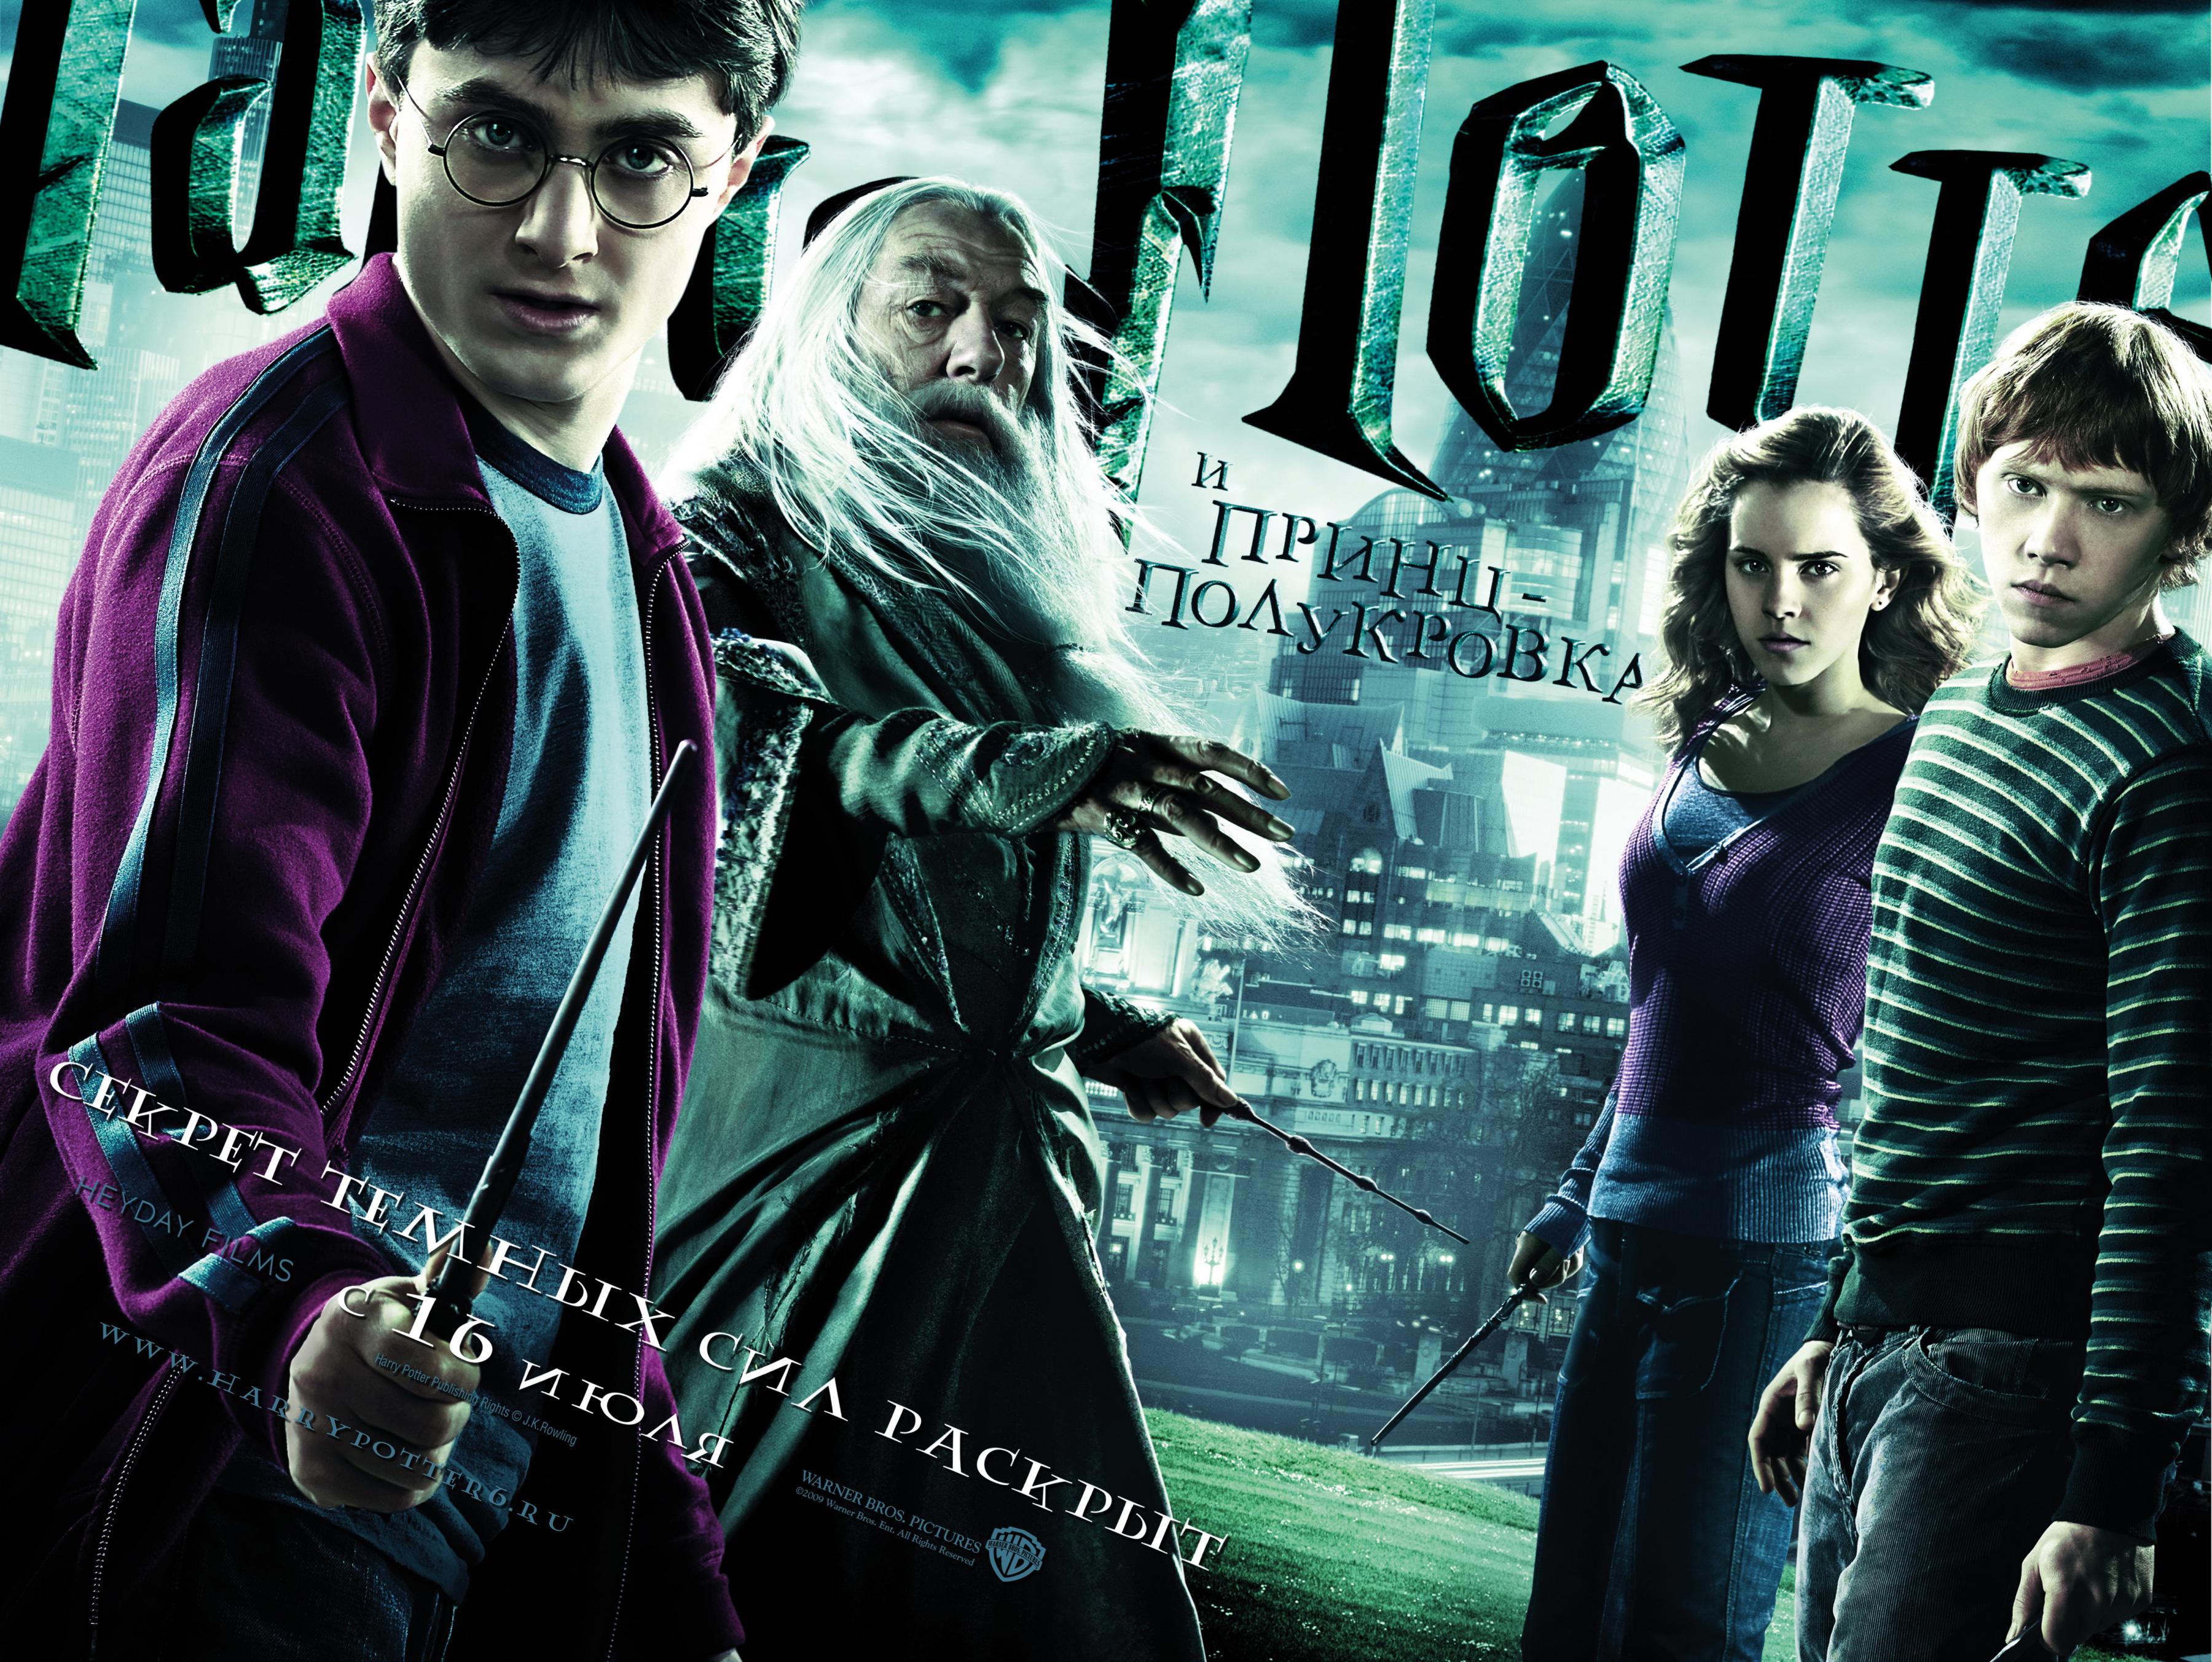 Постер фильма Гарри Поттер и Принц-полукровка | Harry Potter and the Half-Blood Prince